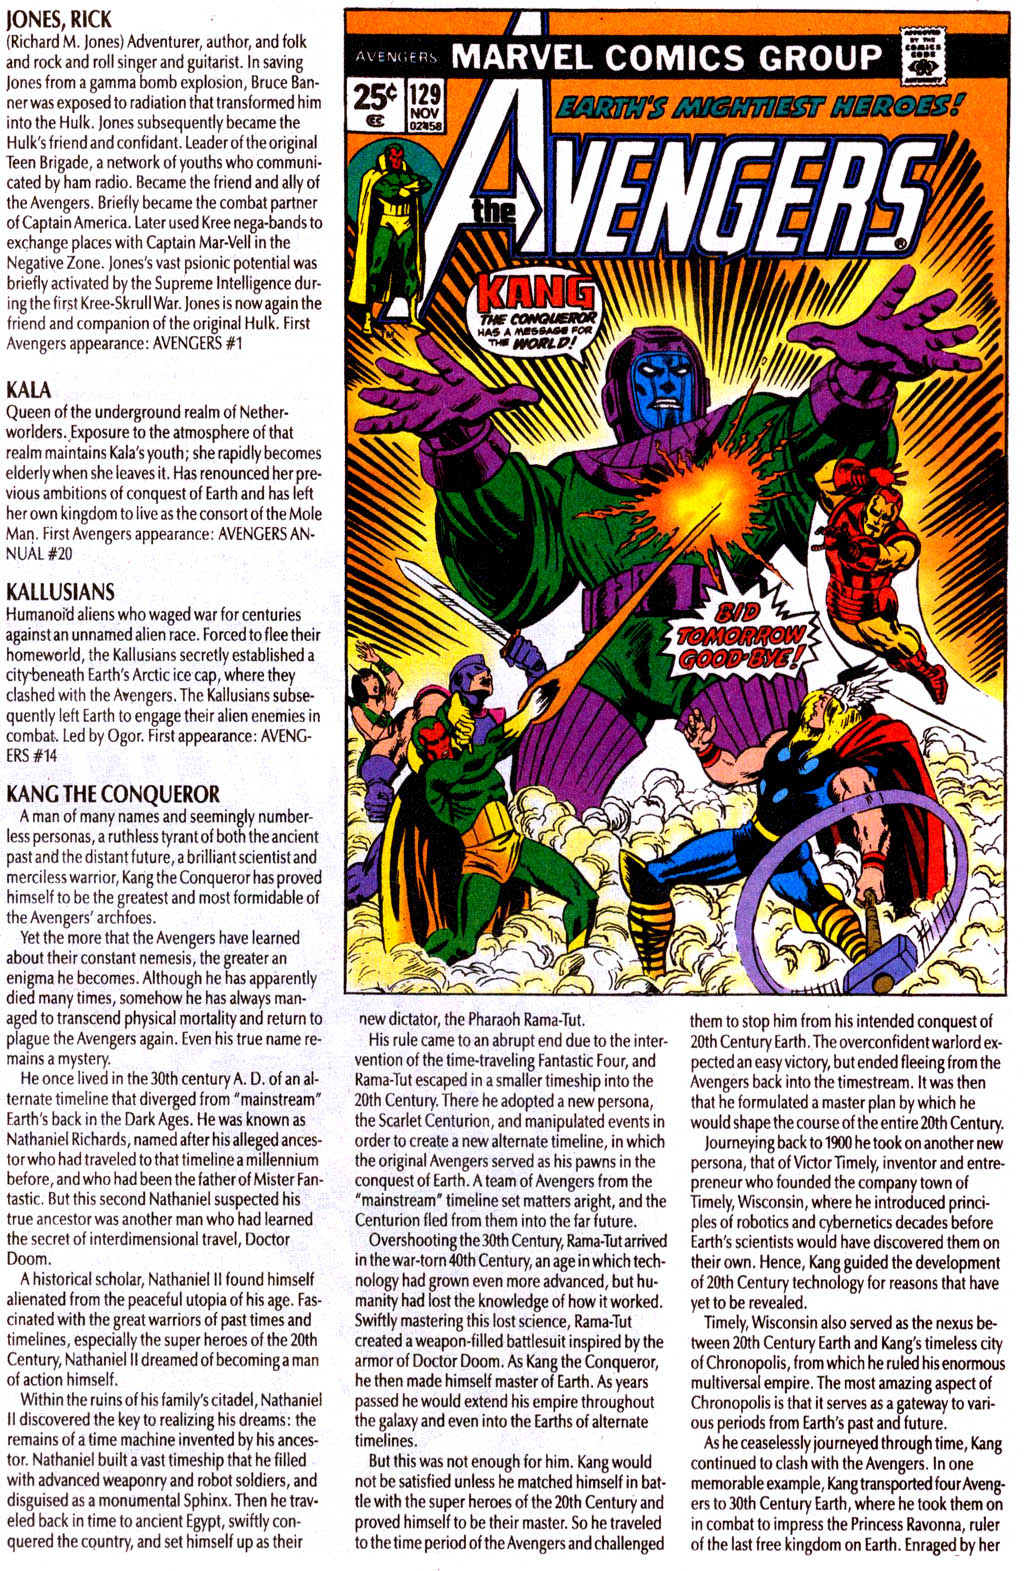 Read online The Avengers Log comic -  Issue # Full - 37